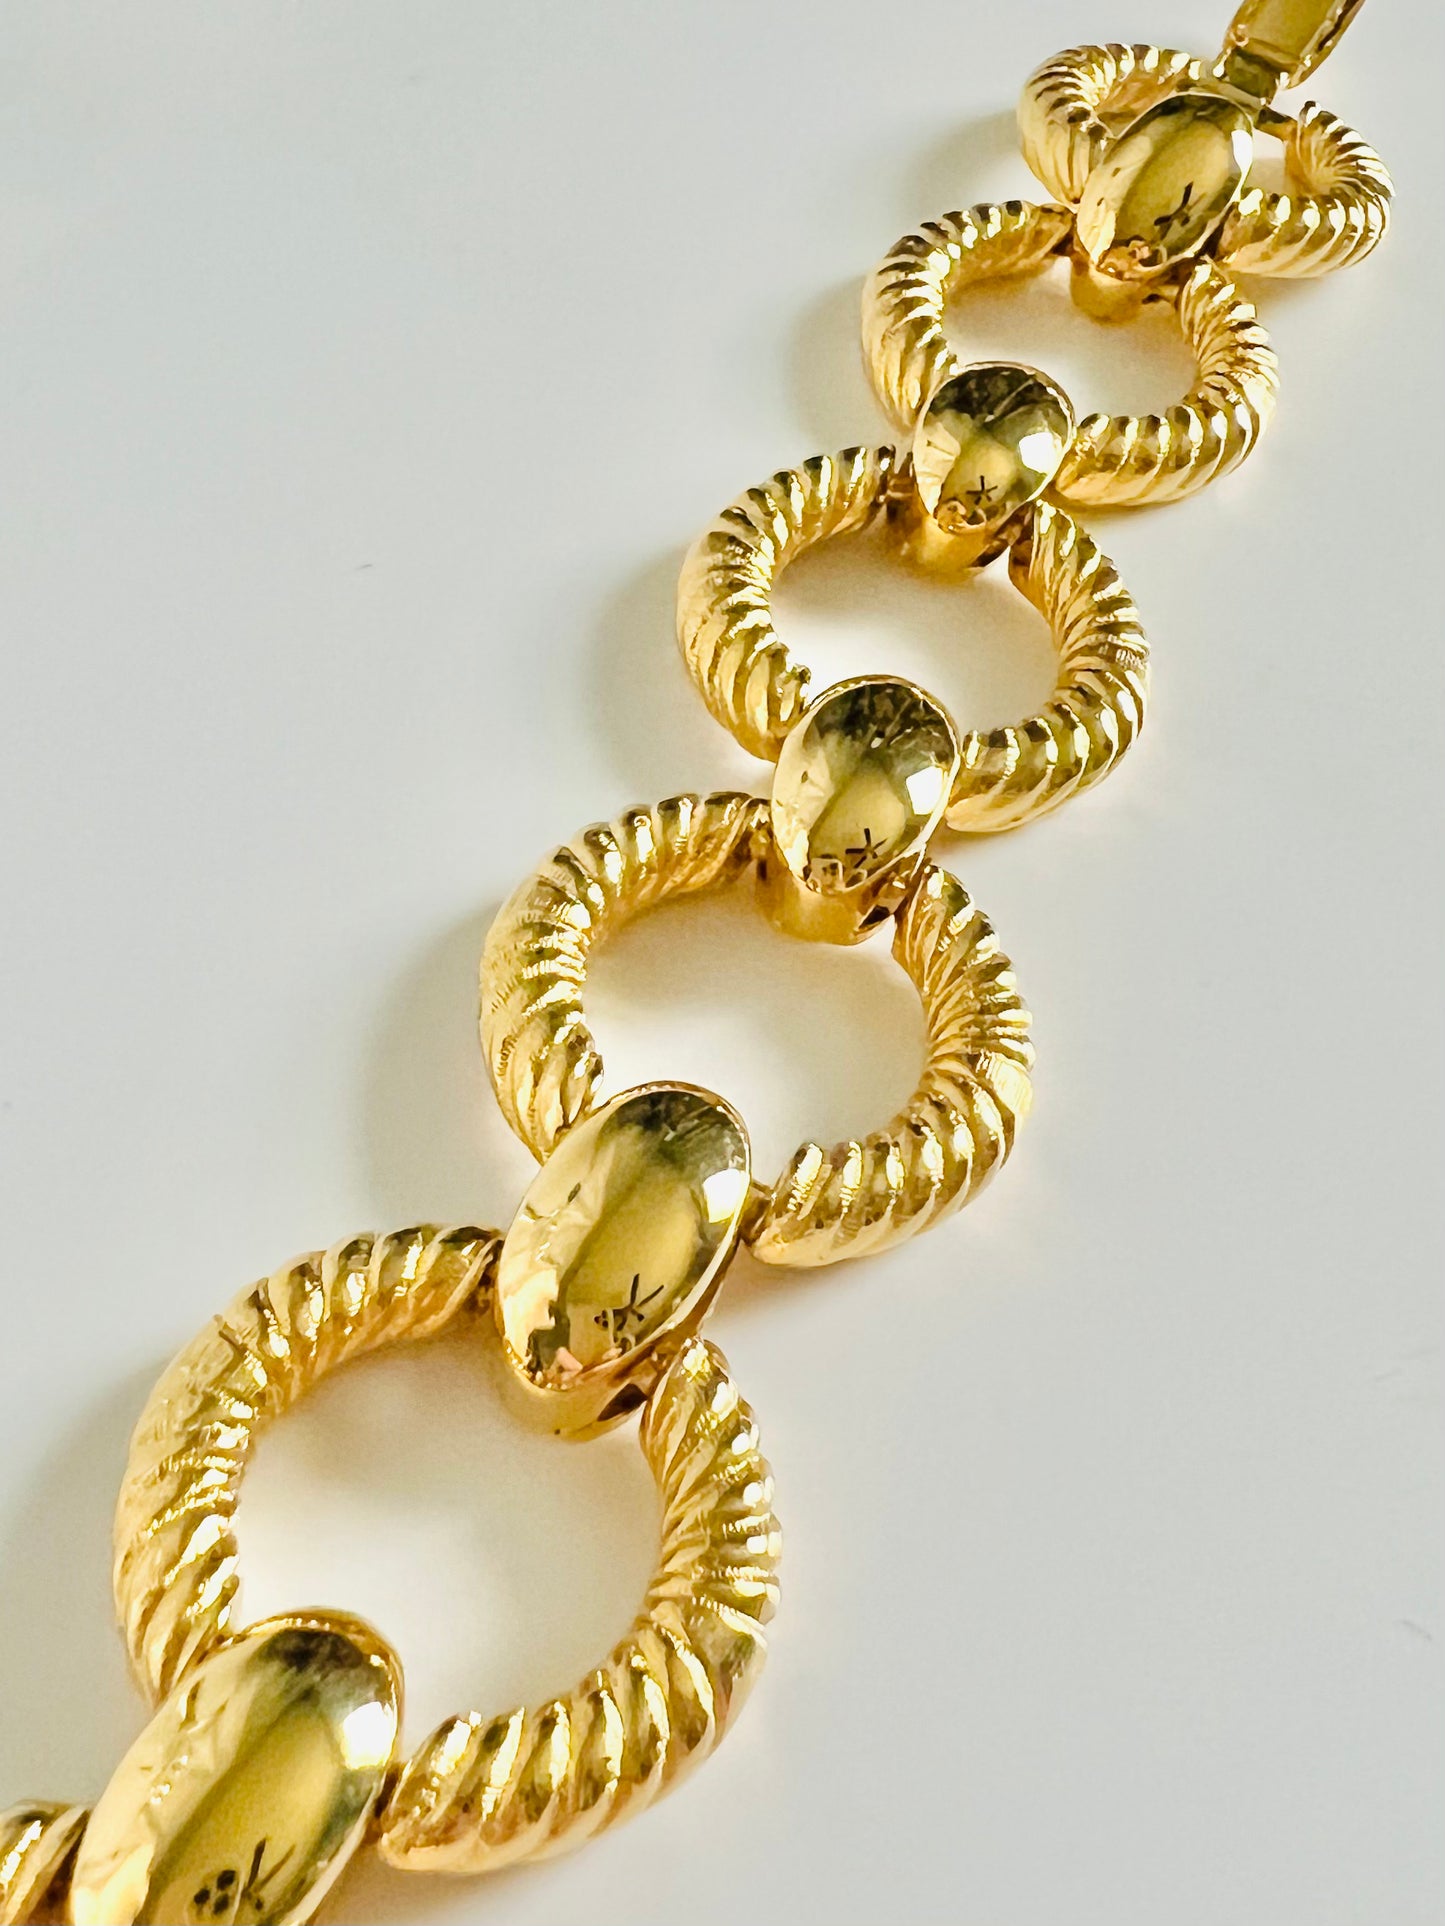 Vintage Gold Joan Rivers Textured Link Bracelet